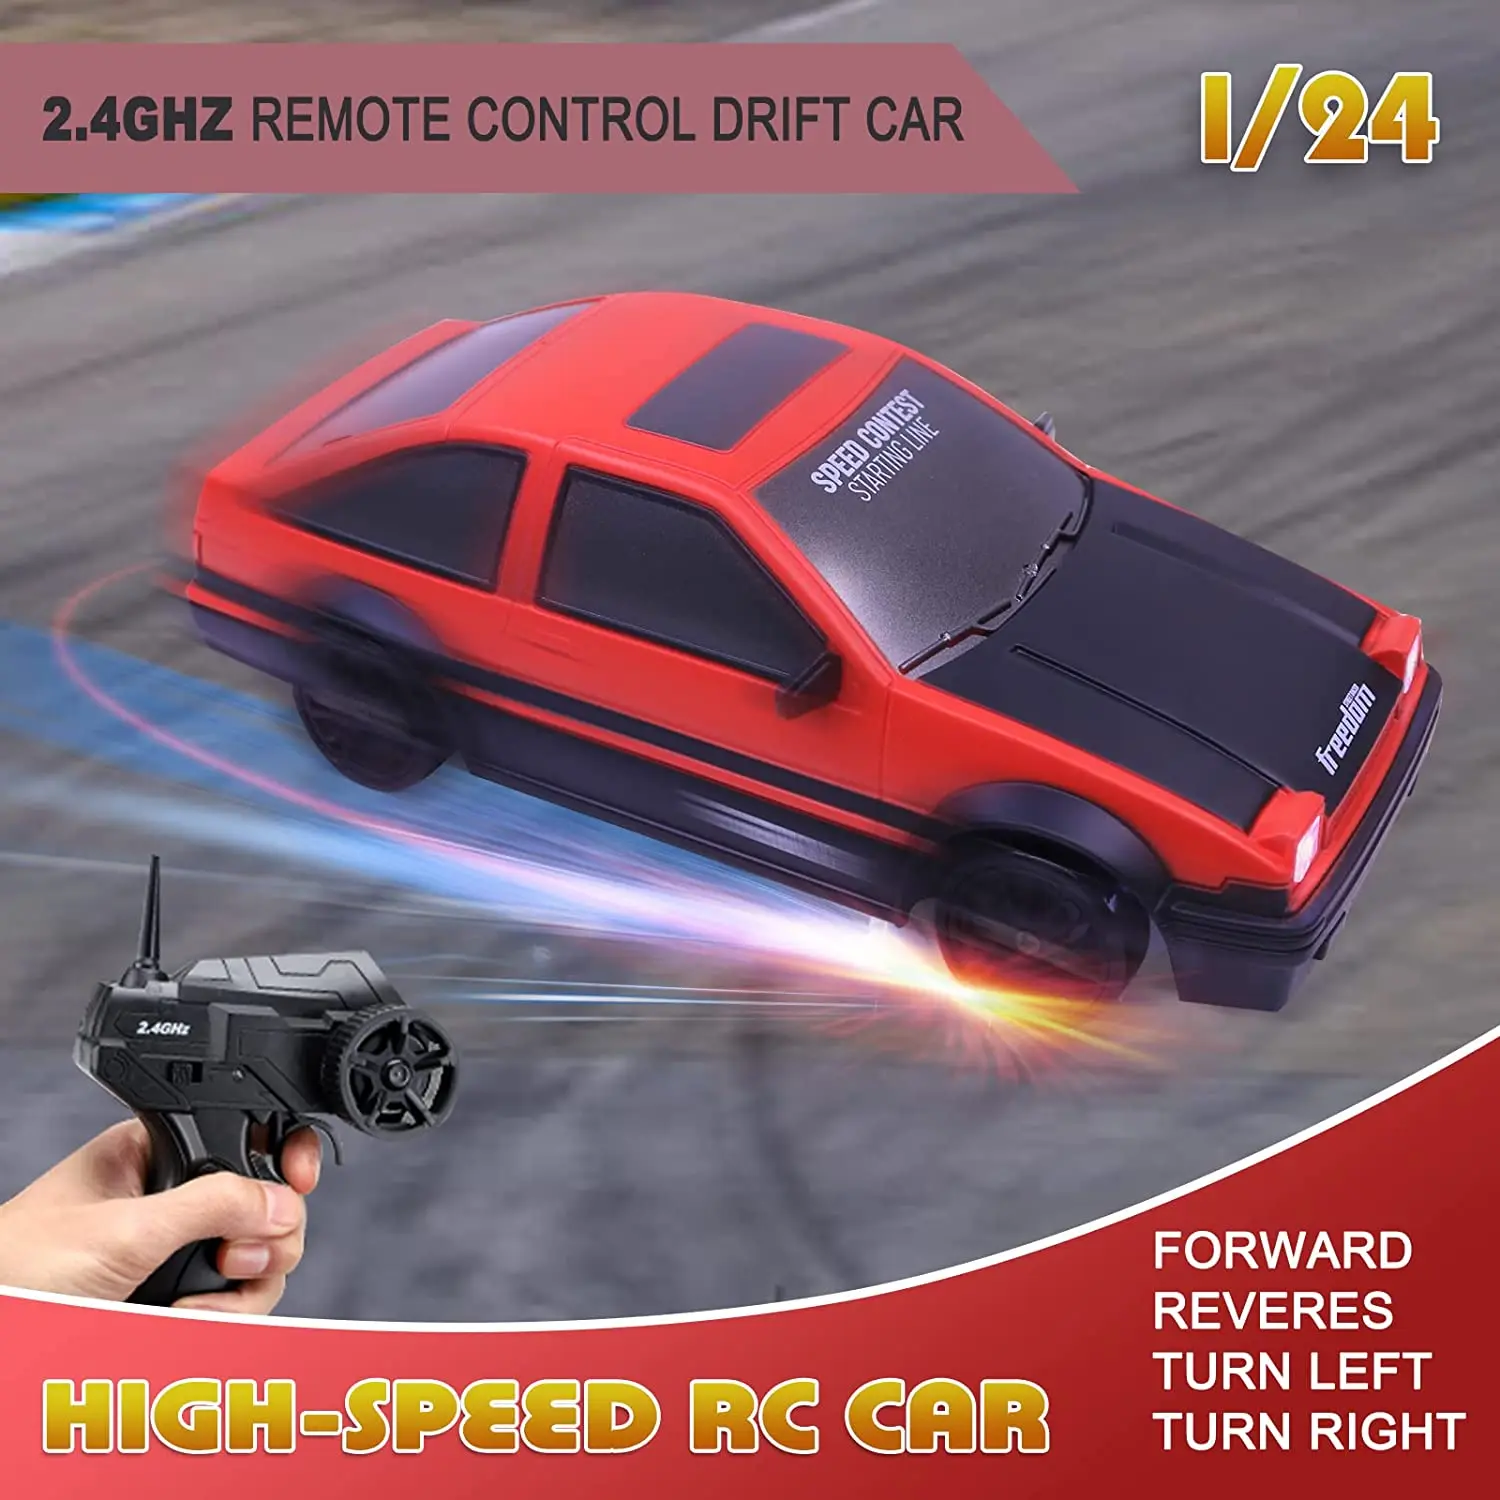 drift controle remoto - Carros RC Brinquedo para Adultos